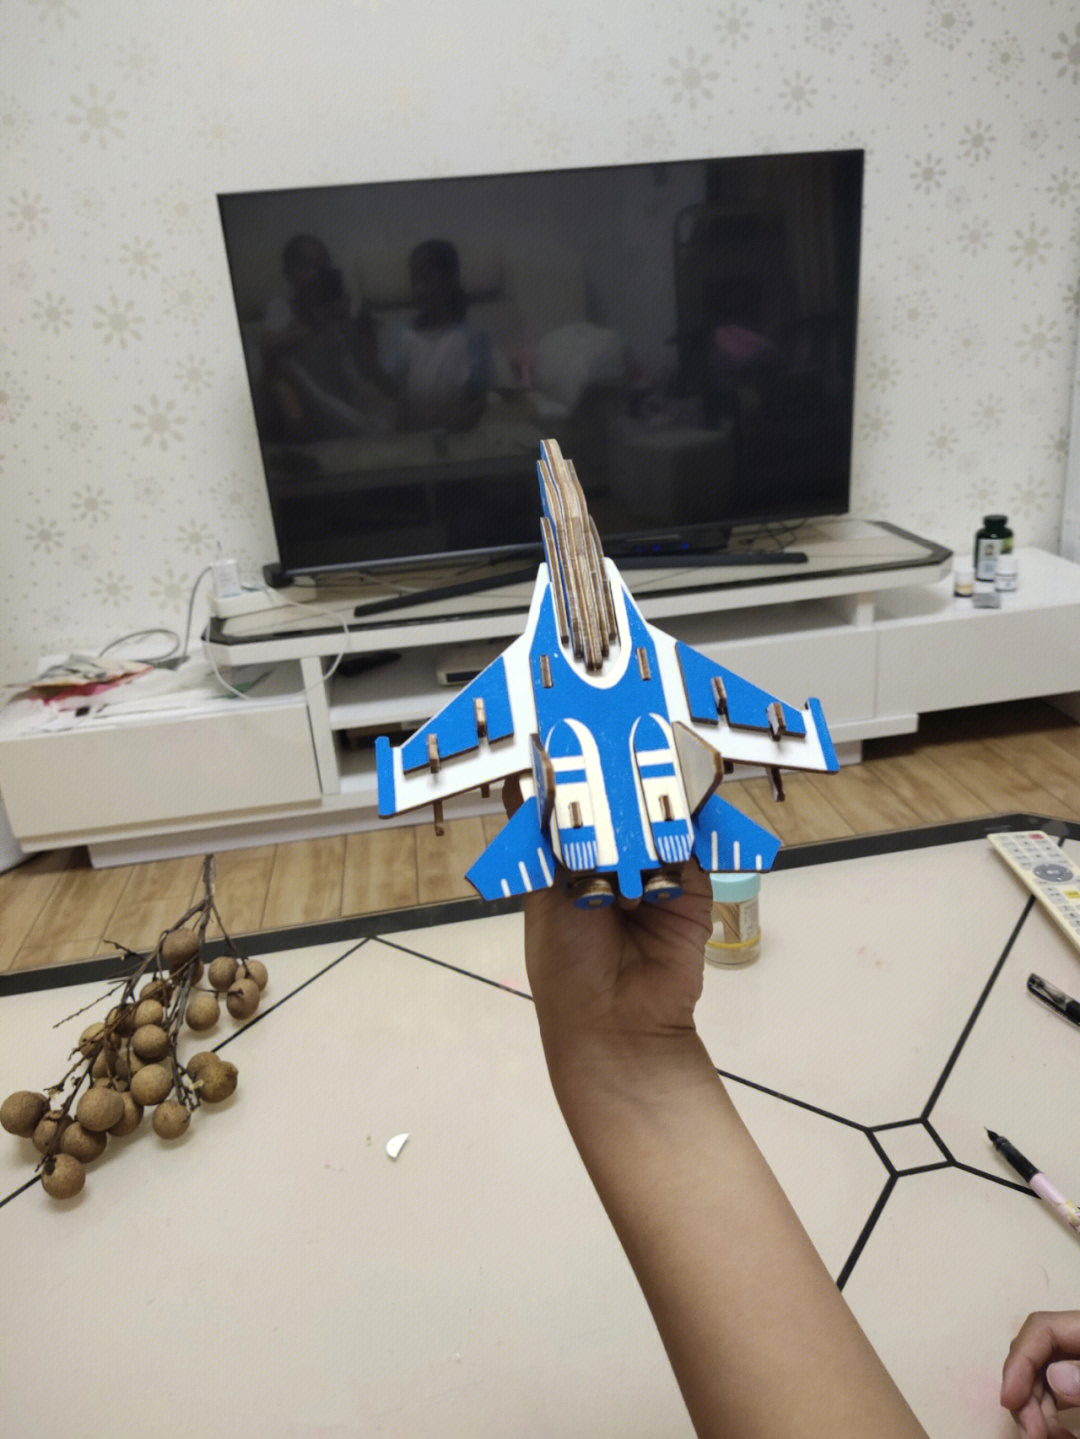 我和妹妹的飞机模型